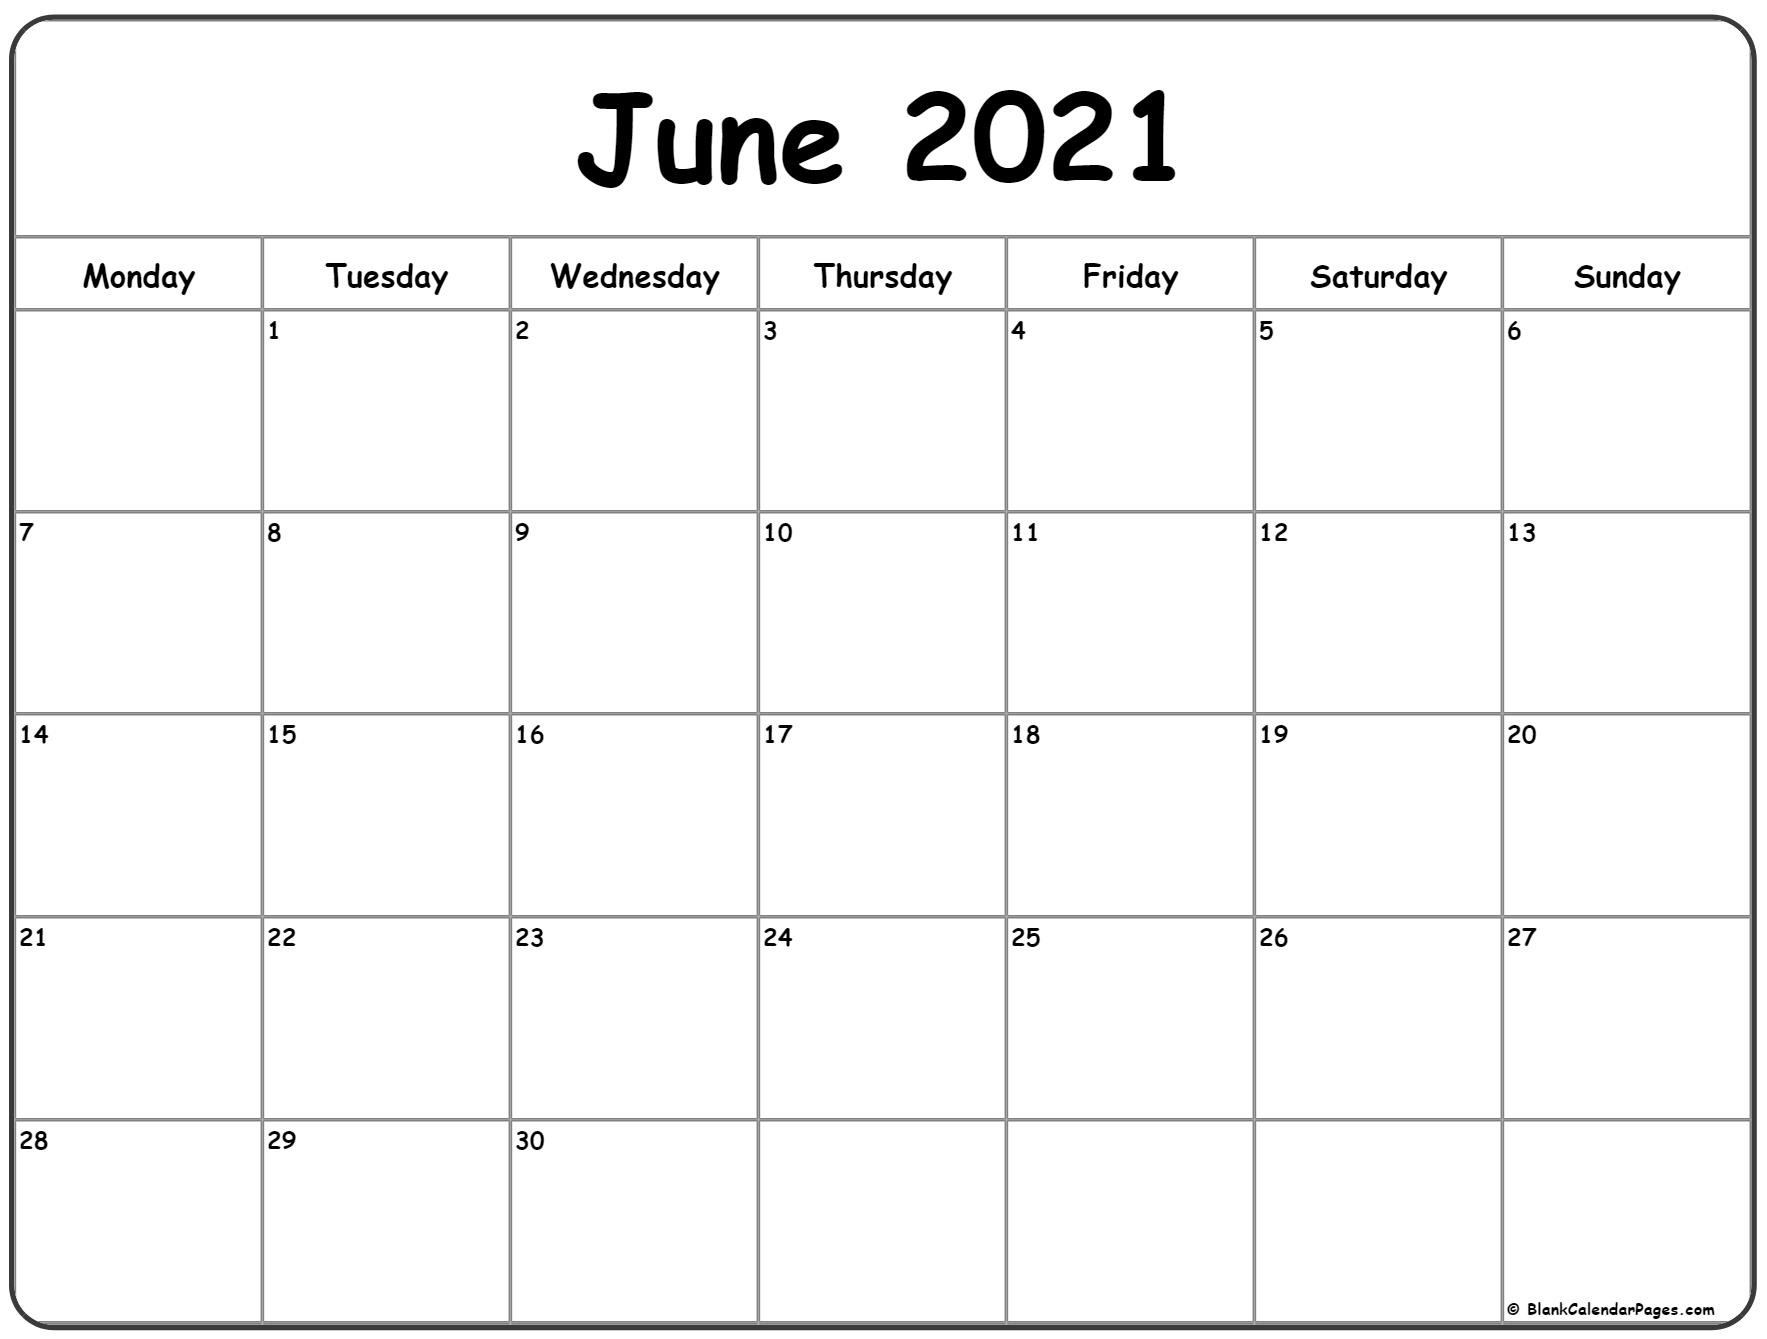 June 2021 Monday Calendar | Monday To Sunday-June 2021 Calendar List Template